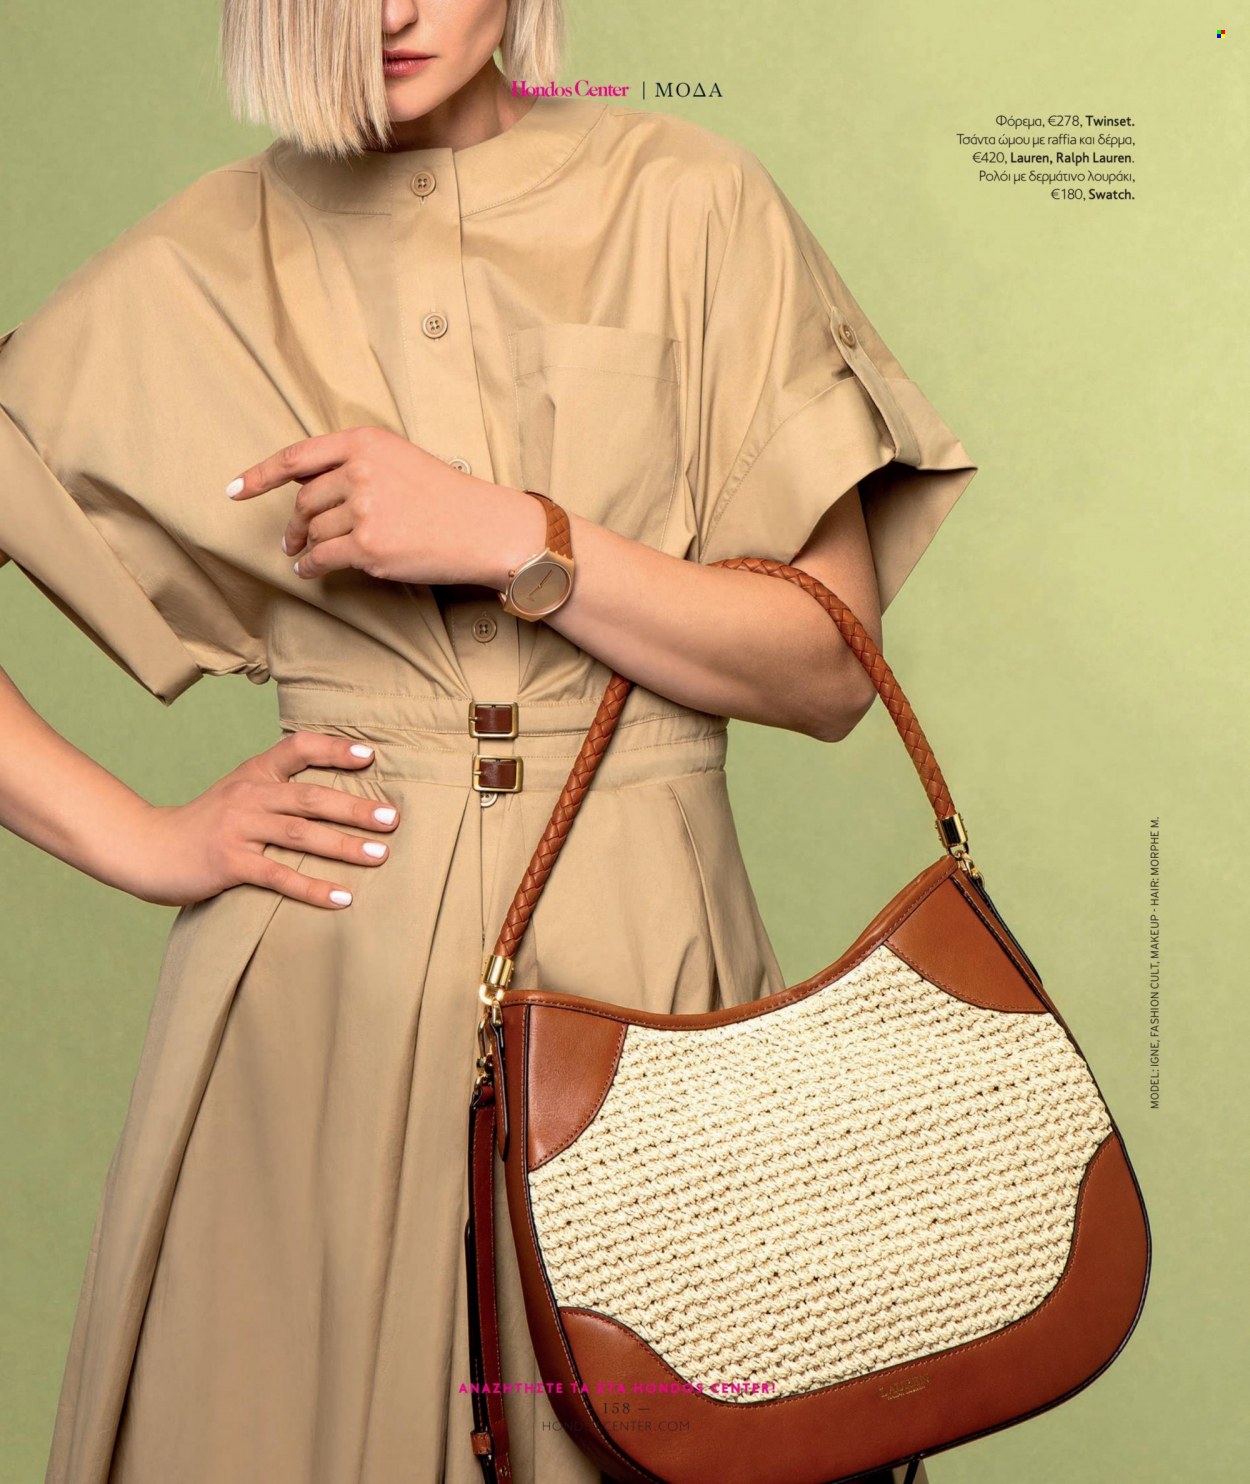 Φυλλάδια Hondos Center - Εκπτωτικά προϊόντα - Ralph Lauren, τσάντα. Σελίδα 158.